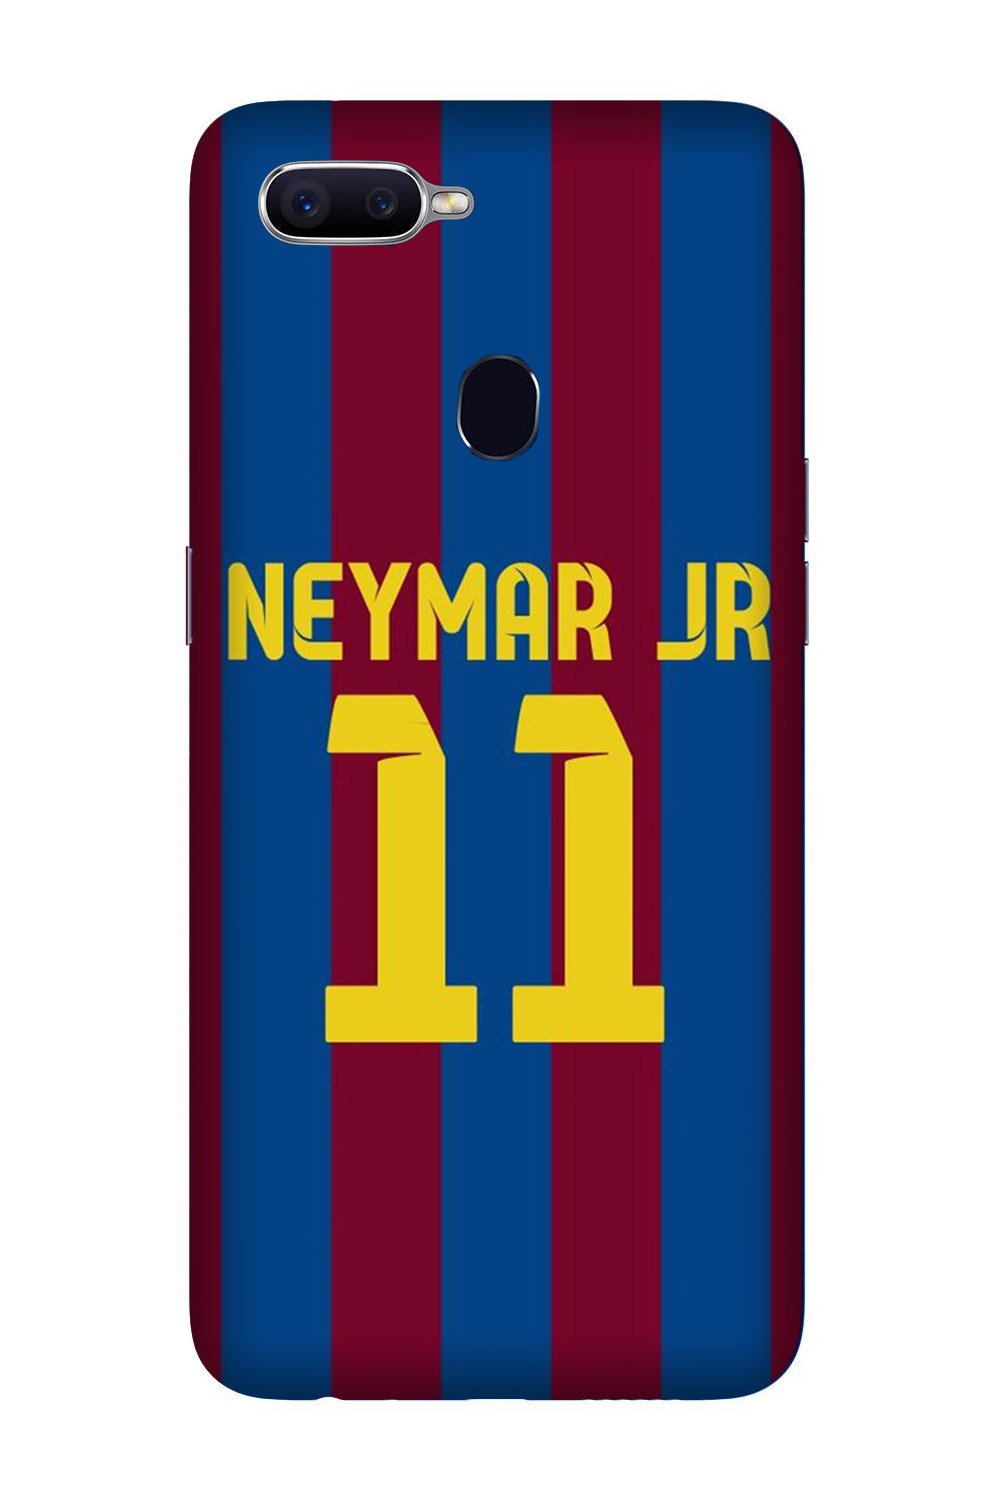 Neymar Jr Case for Oppo R15 Pro(Design - 162)